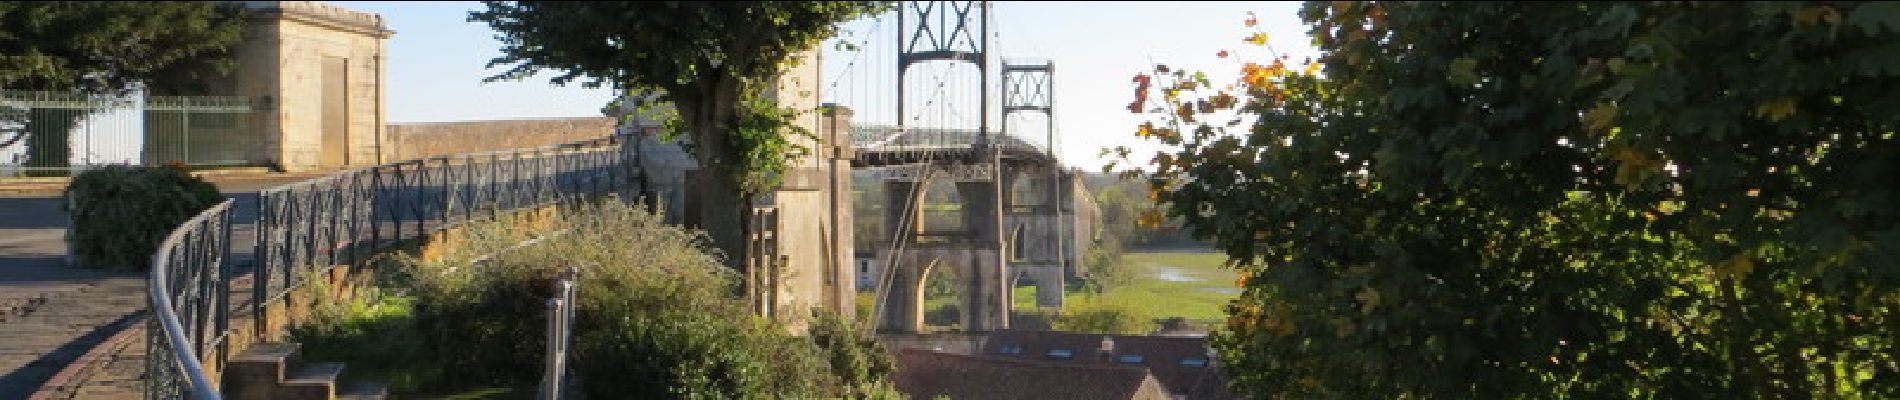 Randonnée Marche Rochefort - Les ponts rochefortais - Rochefort - Photo